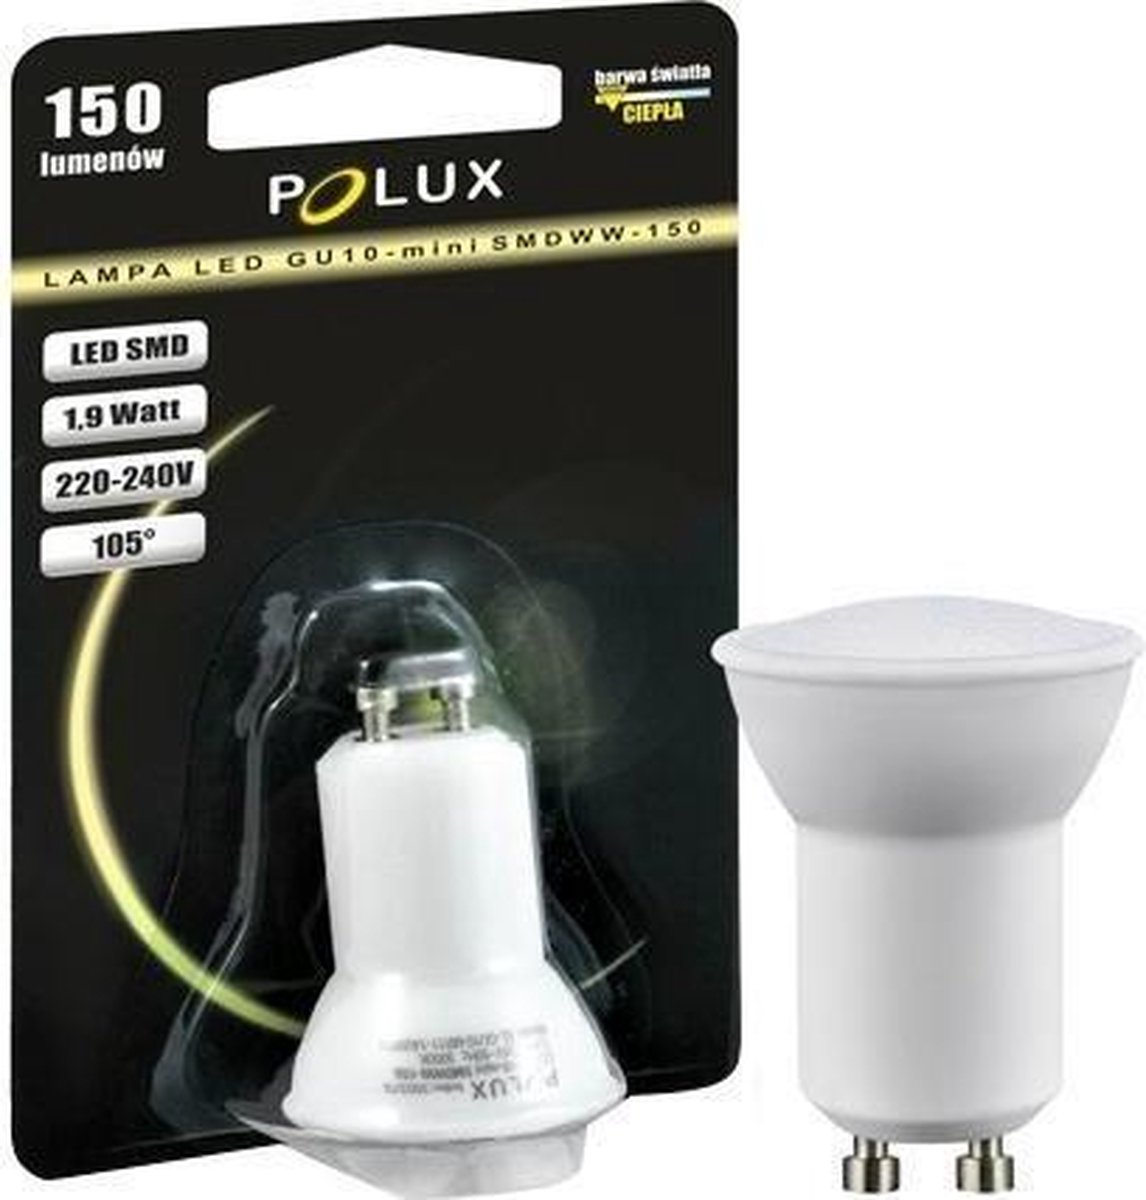 LED Mini GU10 - Blanc CHAUD - (35mm) 150 lumens - 1.9 watts - Polux | bol.